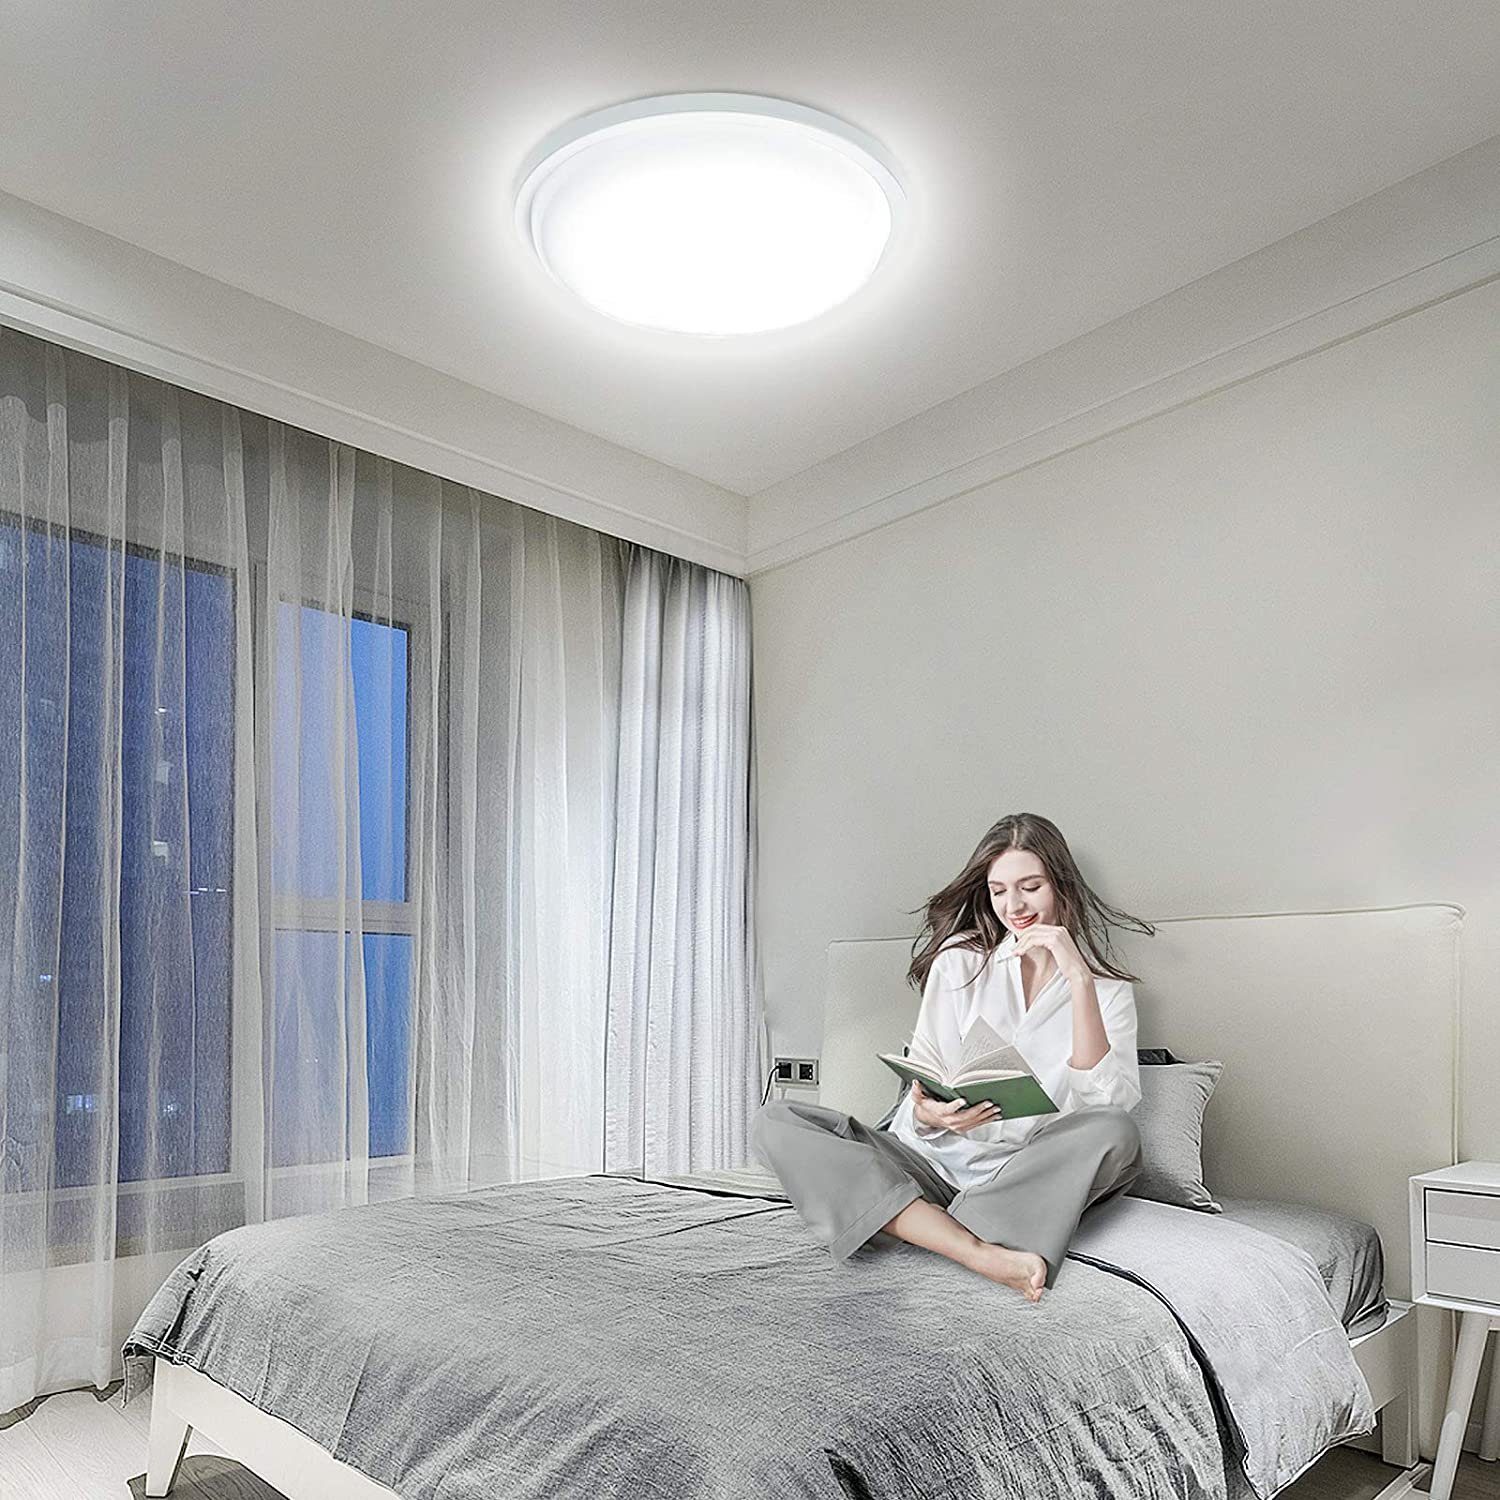 UISEBRT LED Deckenleuchte 15W Rund Moderne IP44 Kaltweiß Deckenlampe, Wasserdicht